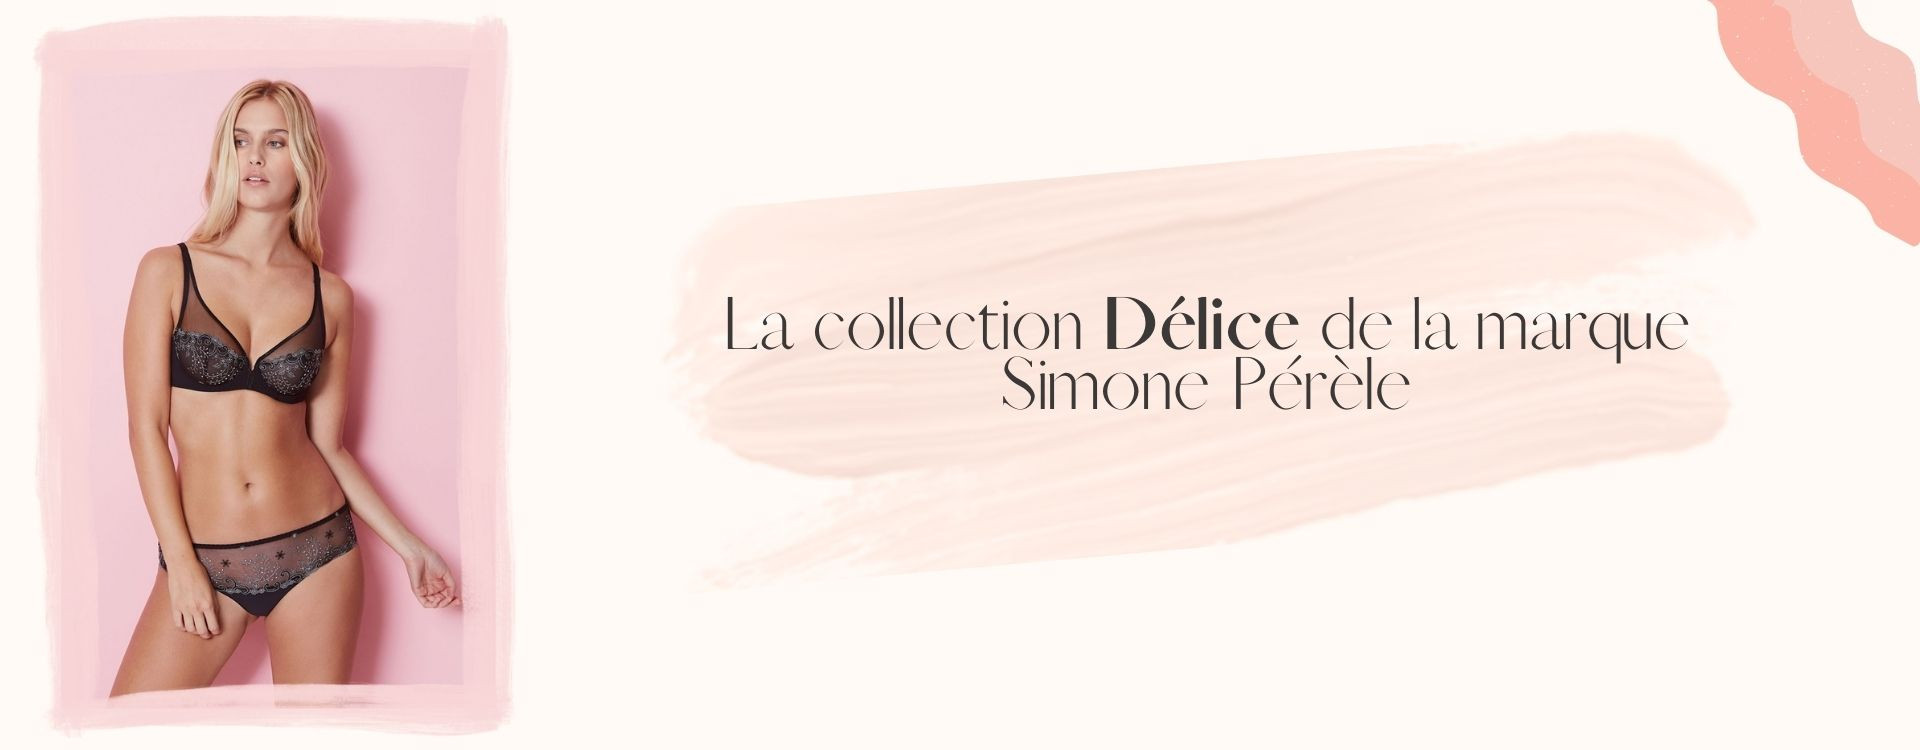 La collection Délice de la marque Simone Pérèle